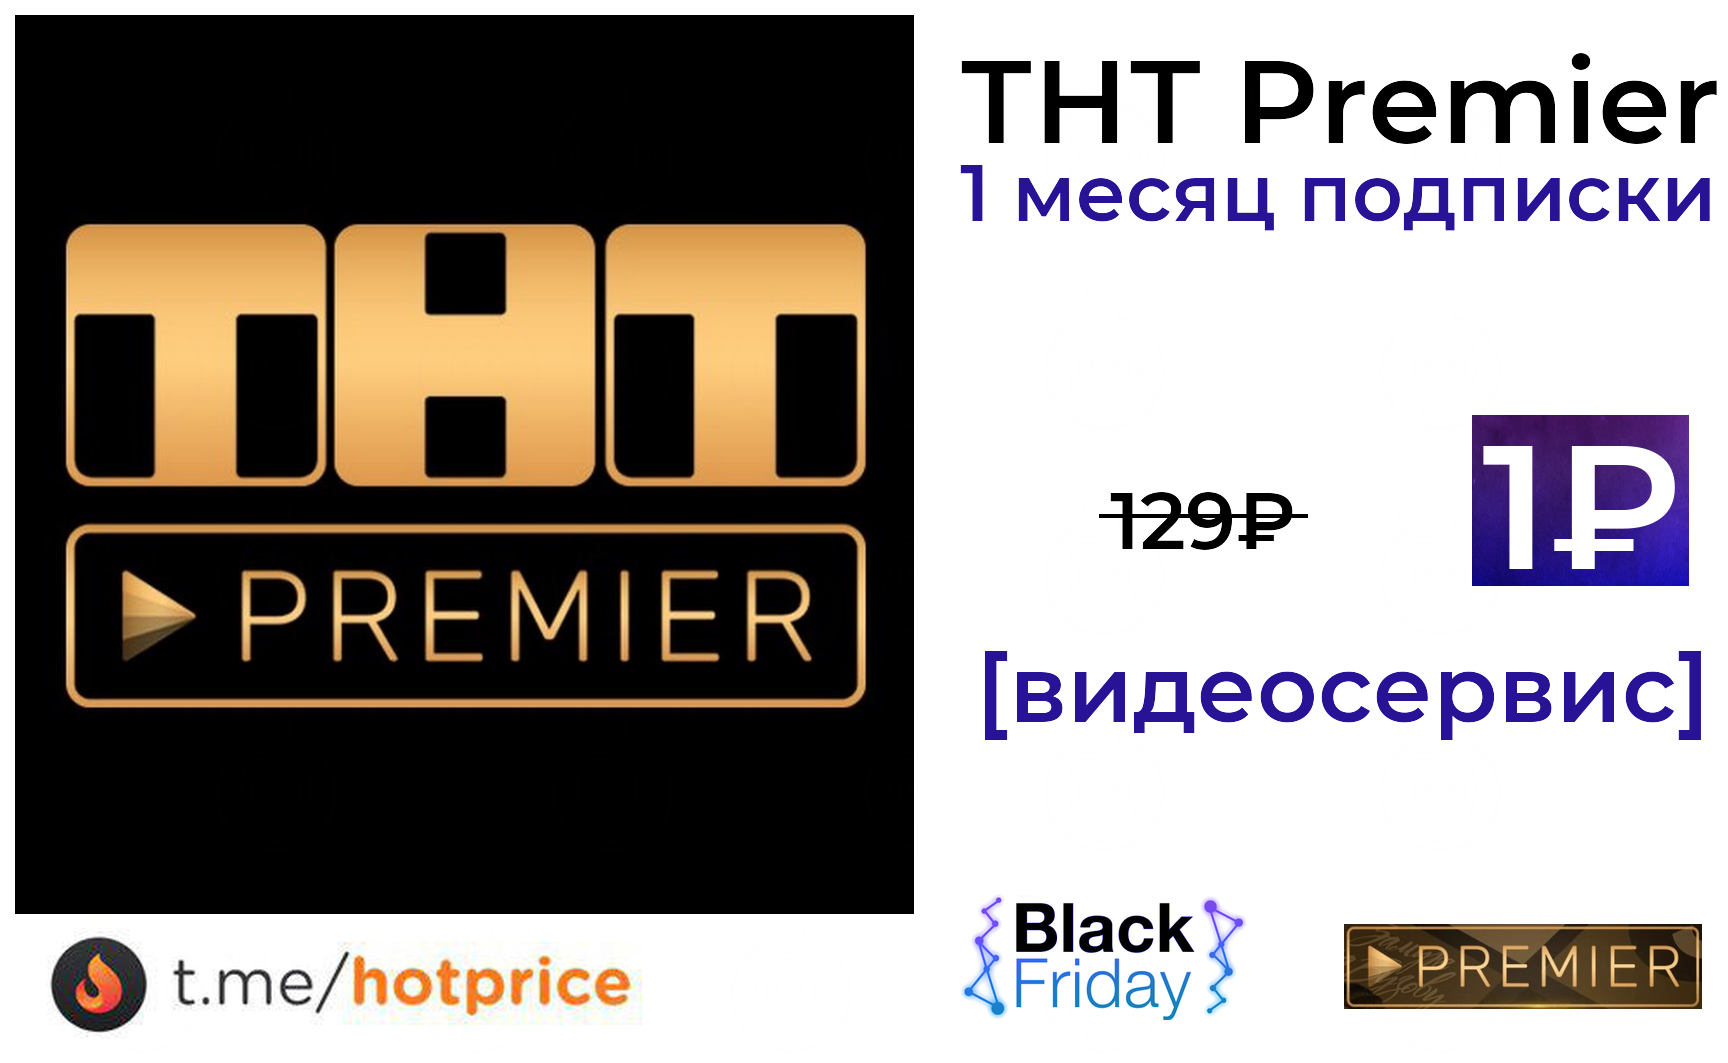 ТНТ Premier логотип. Кинотеатр Premier логотип. Телеканал ТНТ премьер.